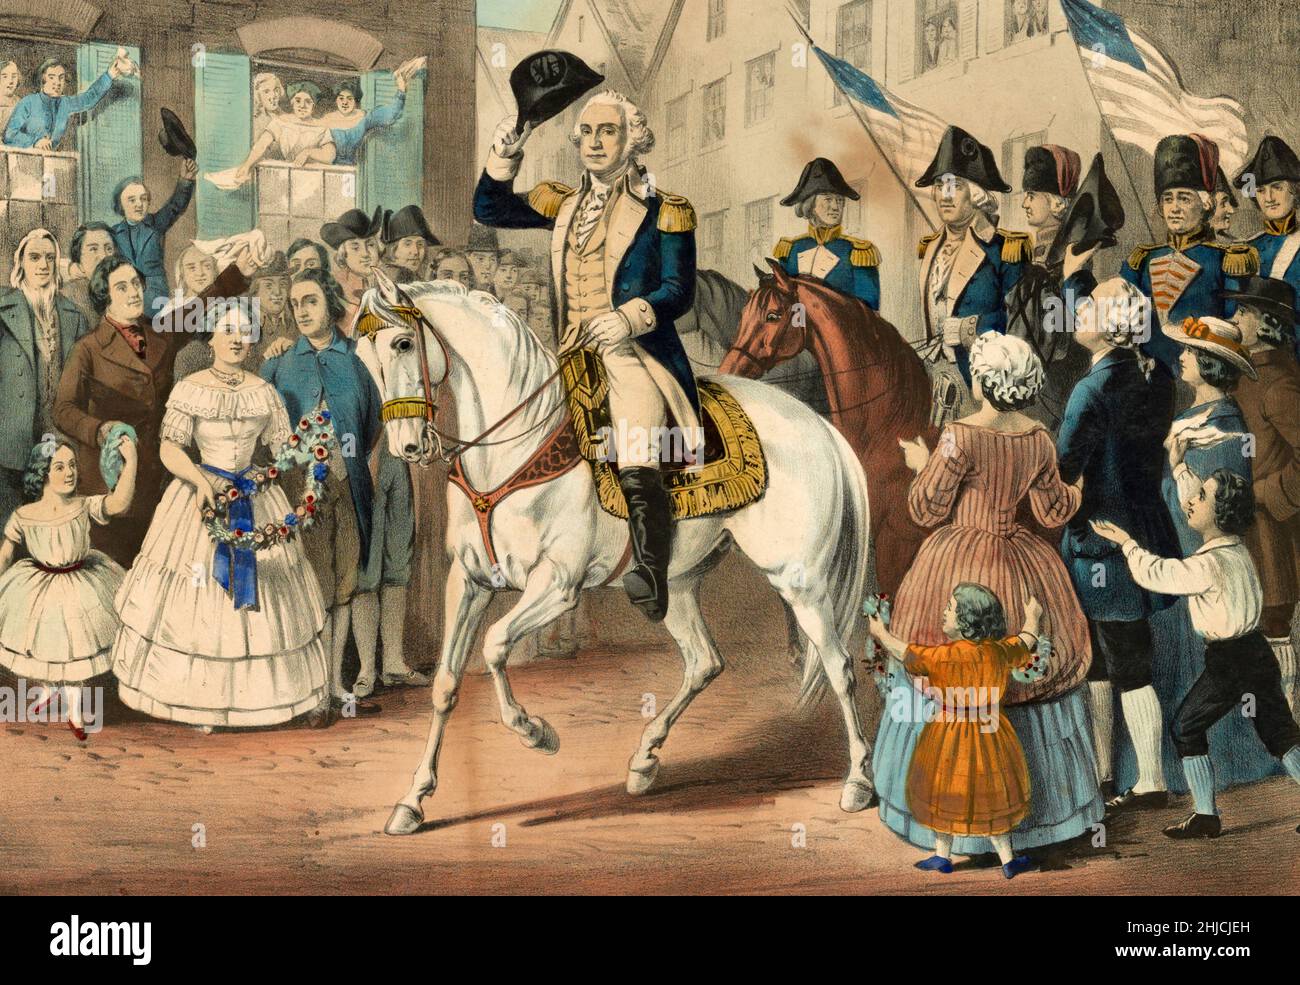 George Washingtons Eintritt in New York, nach der Evakuierung der Stadt durch die Briten nach der amerikanischen Revolution, November 25th 1783. Handkolorierte Lithographie, herausgegeben von Currier und Ives, 1857. Stockfoto